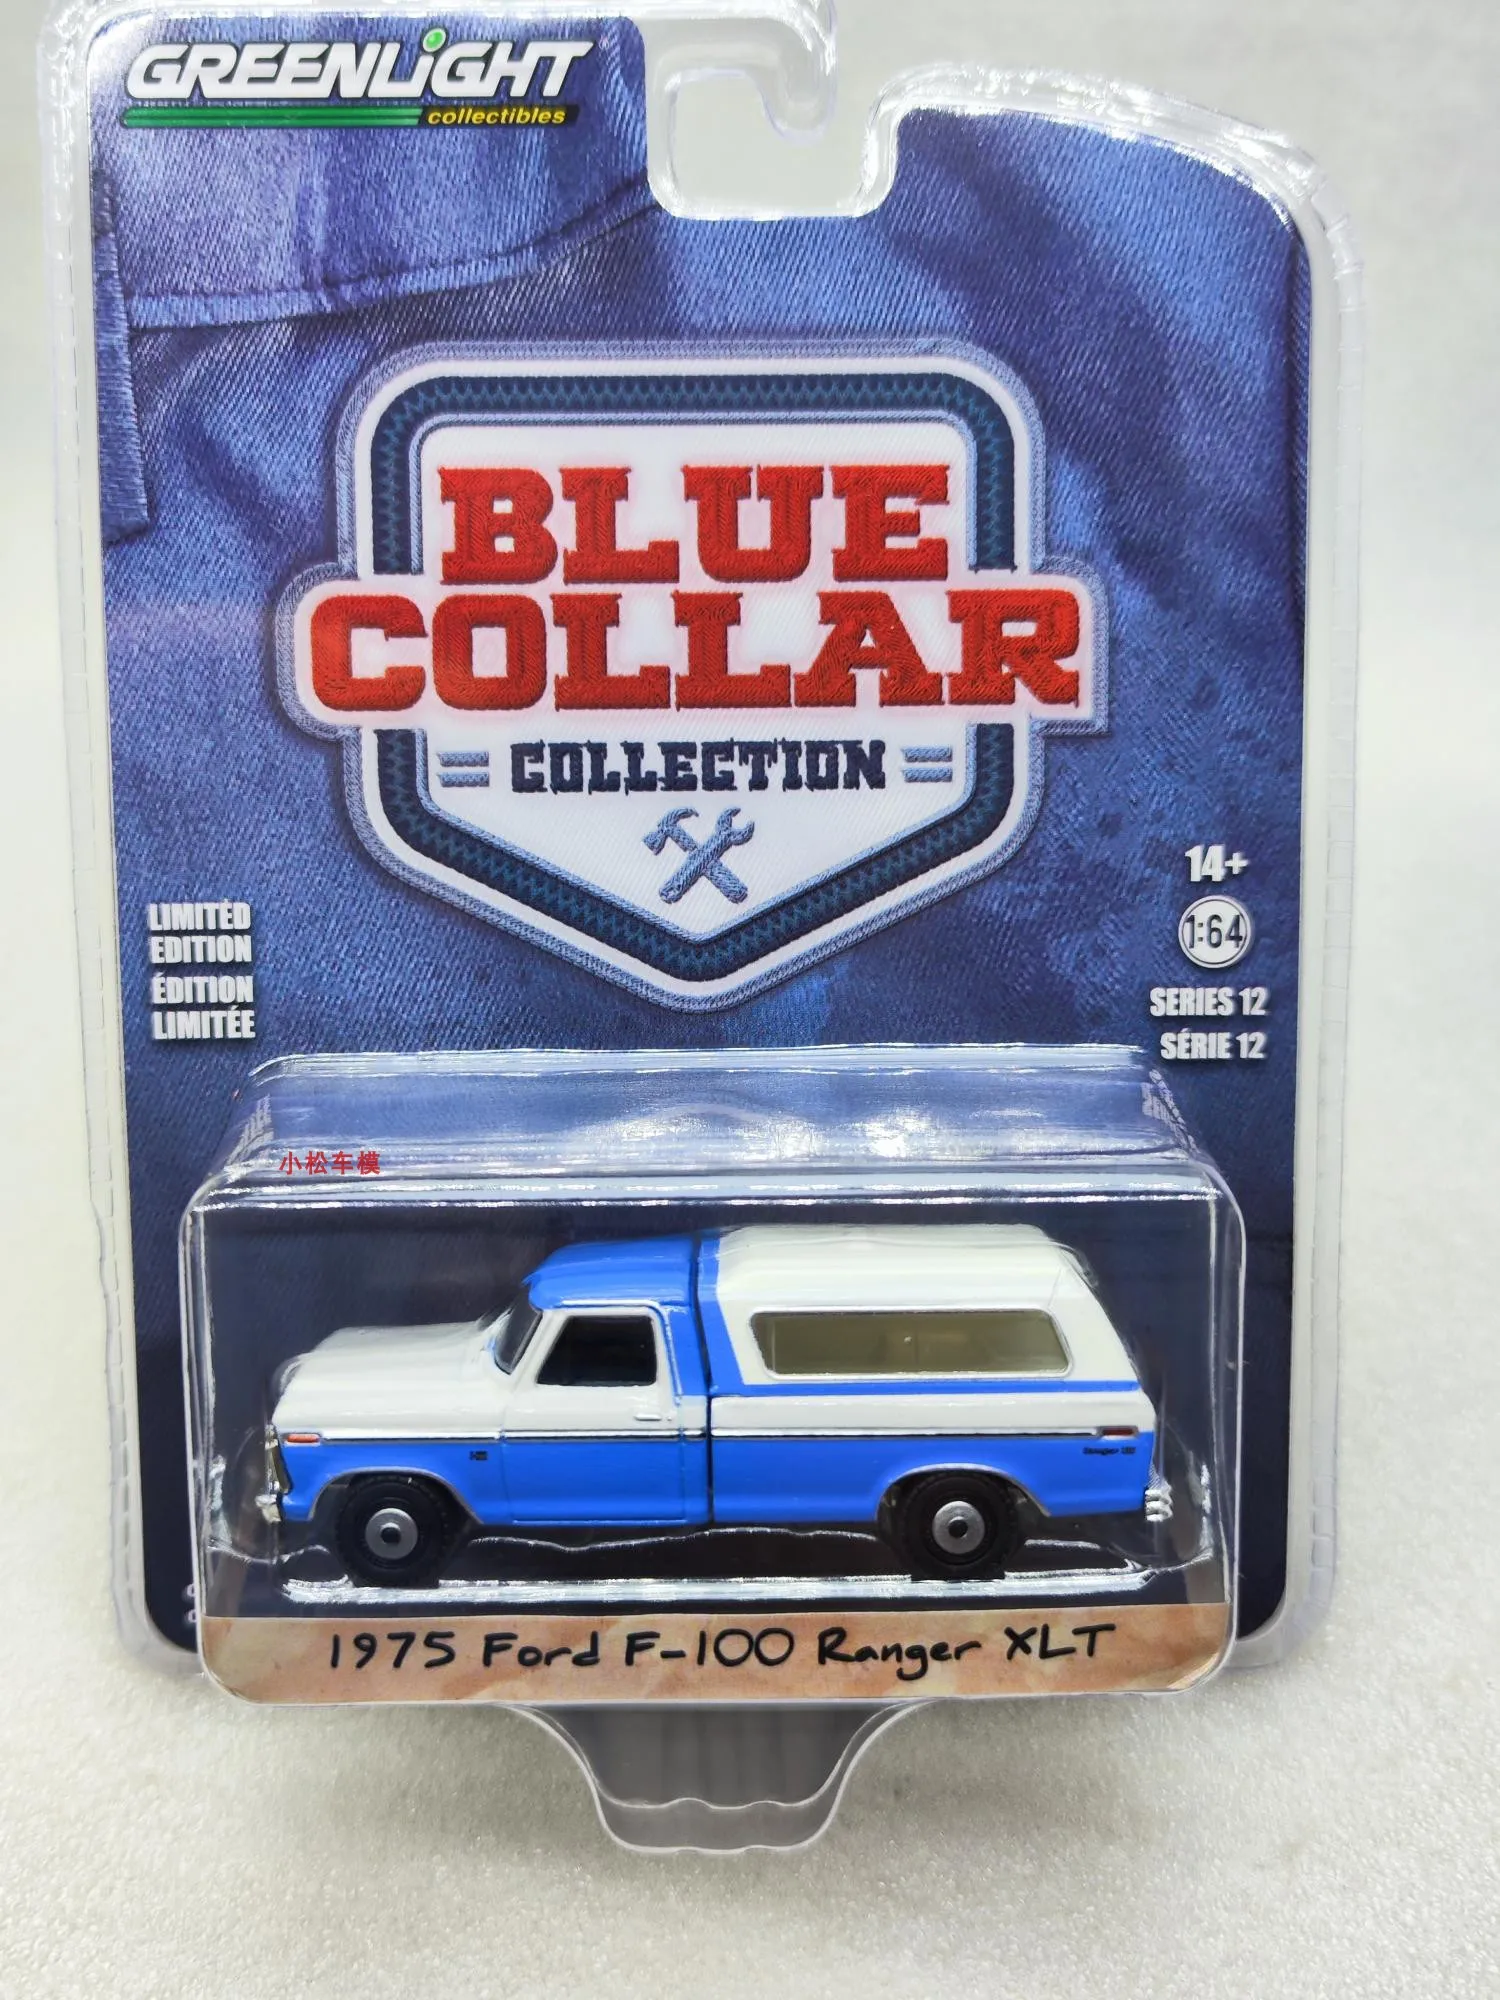 

1:64 1975 Ford F-100 Ranger XLT с корпусом для кемпинга-Ветрозащитный синий и белый, коллекция моделей автомобилей Wimbledon